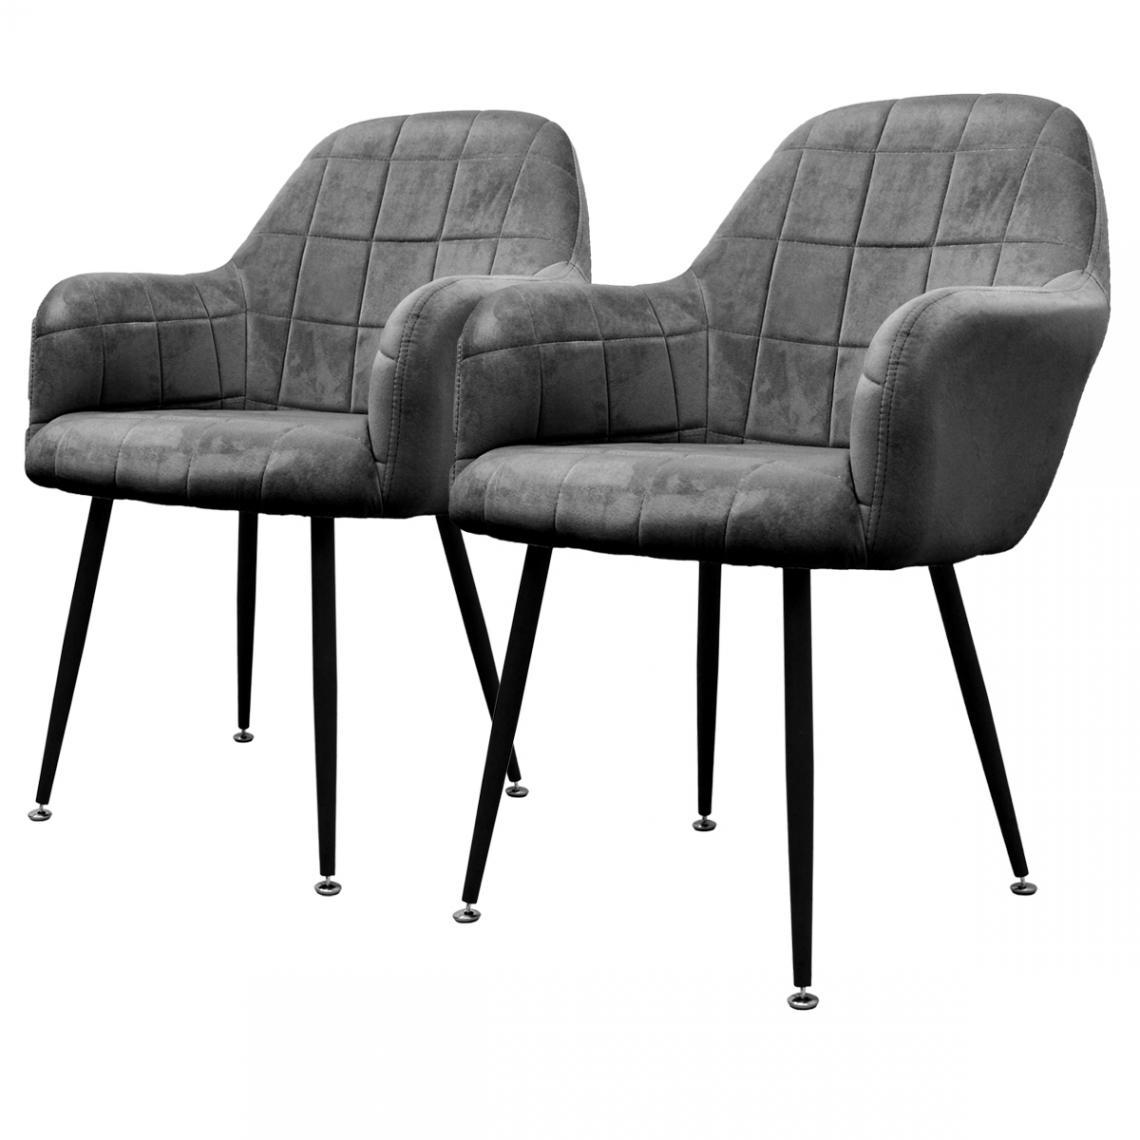 Ecd Germany - Chaise salle à manger tendance rétro moderne fauteuil velours pieds métalliques - Chaises